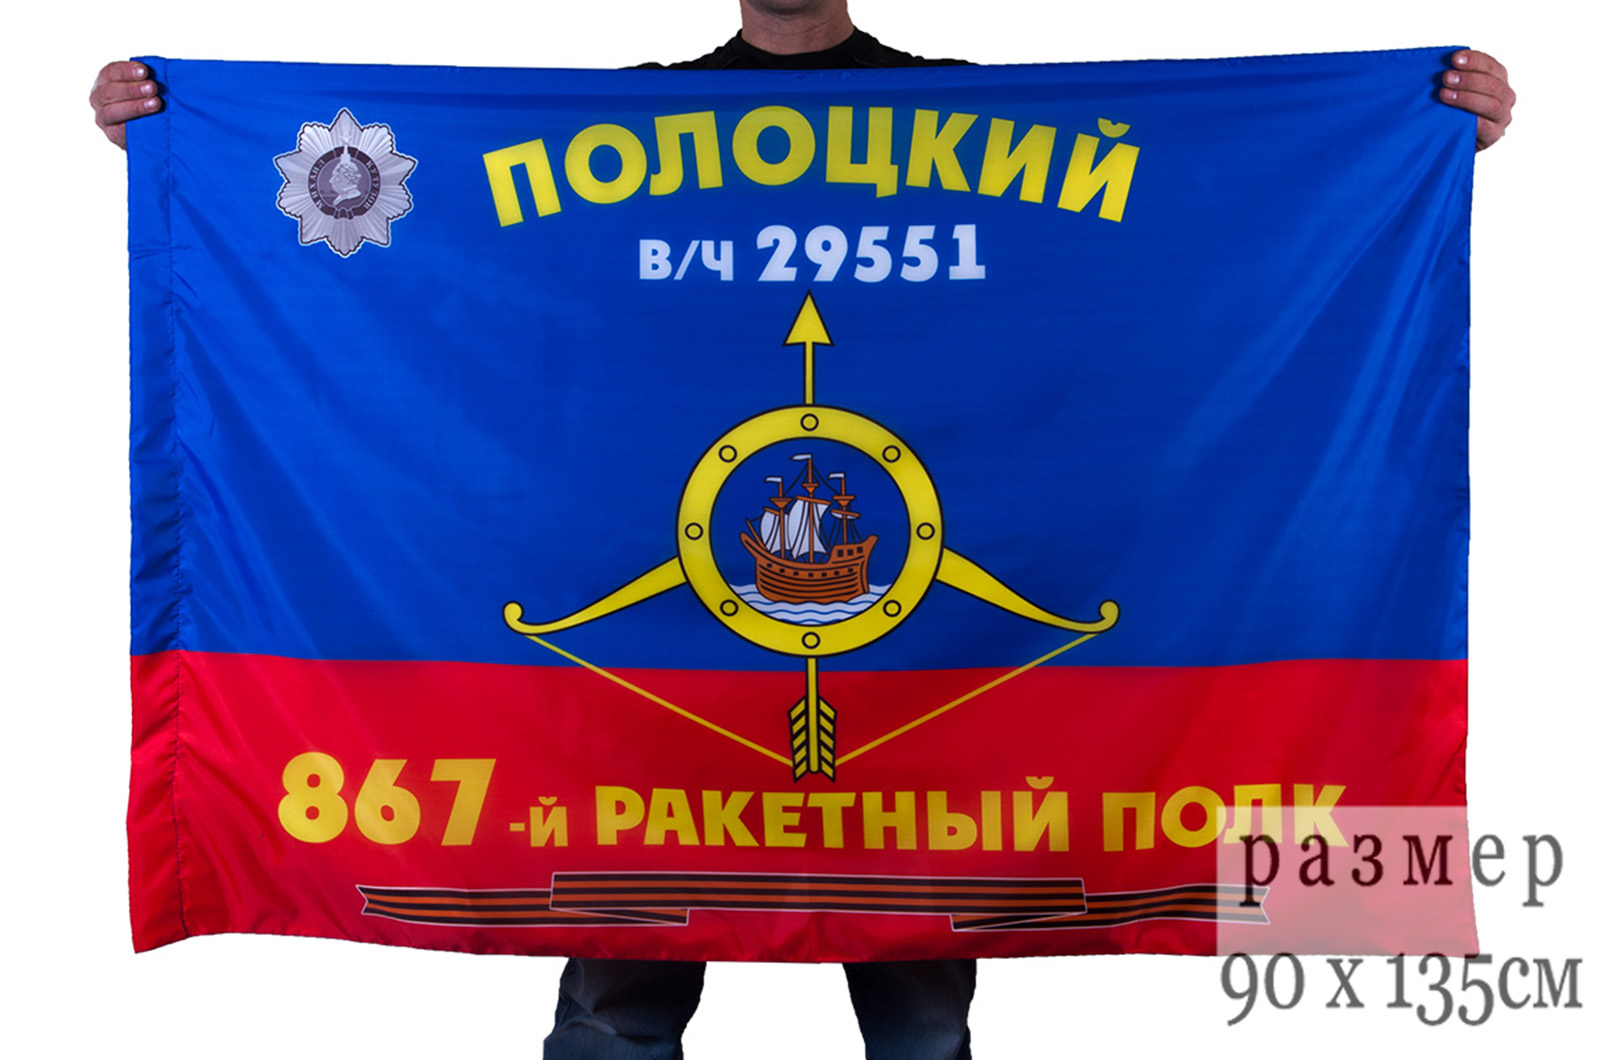 867 Гвардейский Полоцкий ордена Кутузова 3 степени ракетный полк